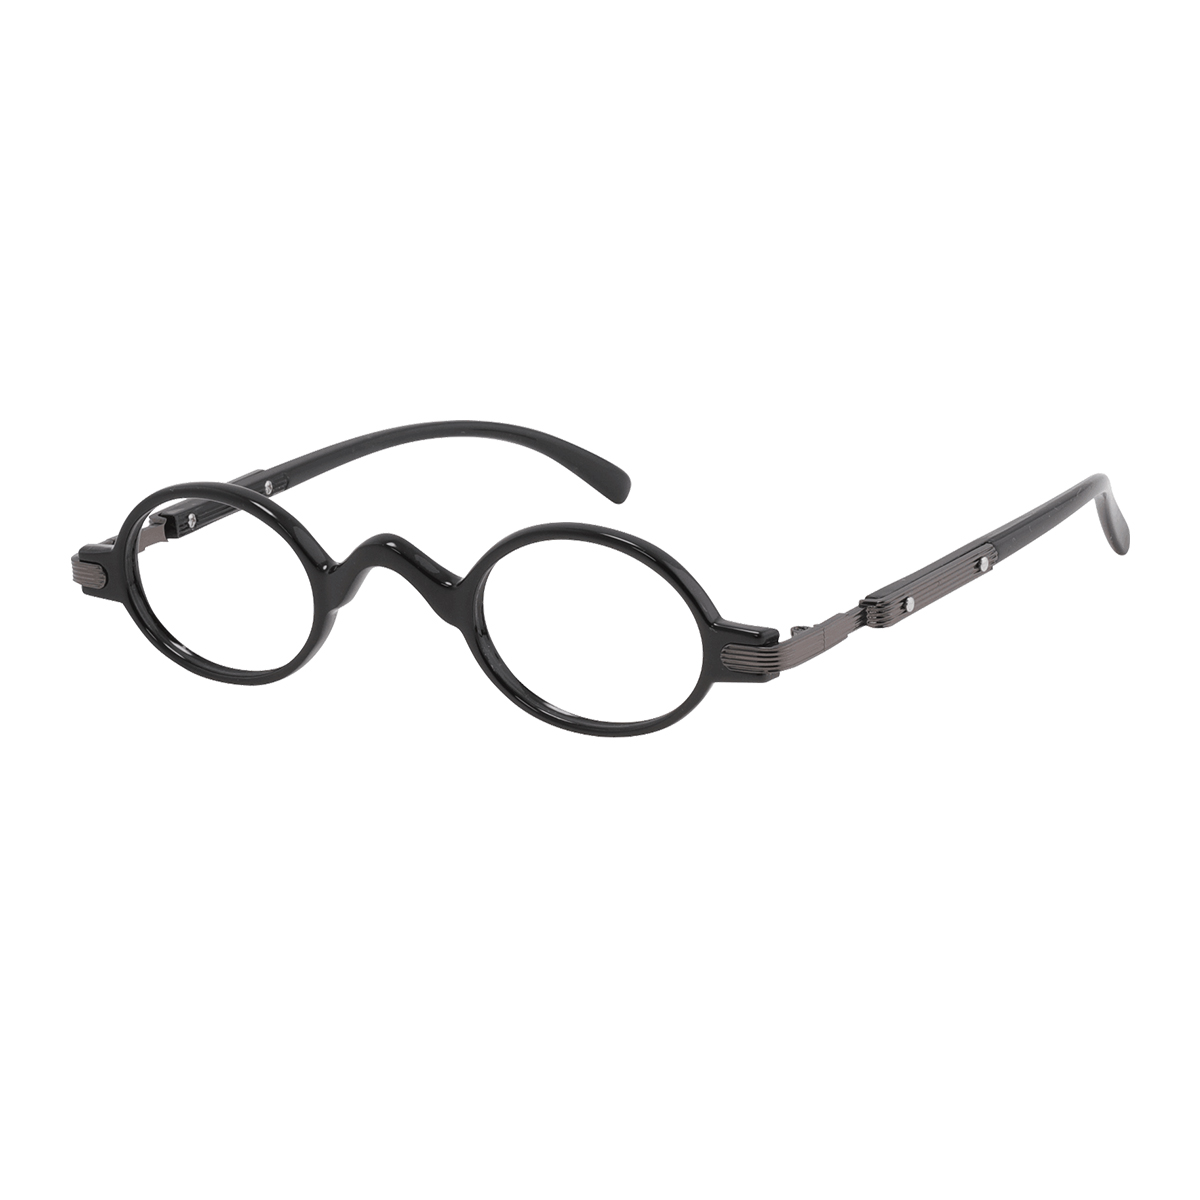 Dodona - Round Black Reading Glasses for Men & Women